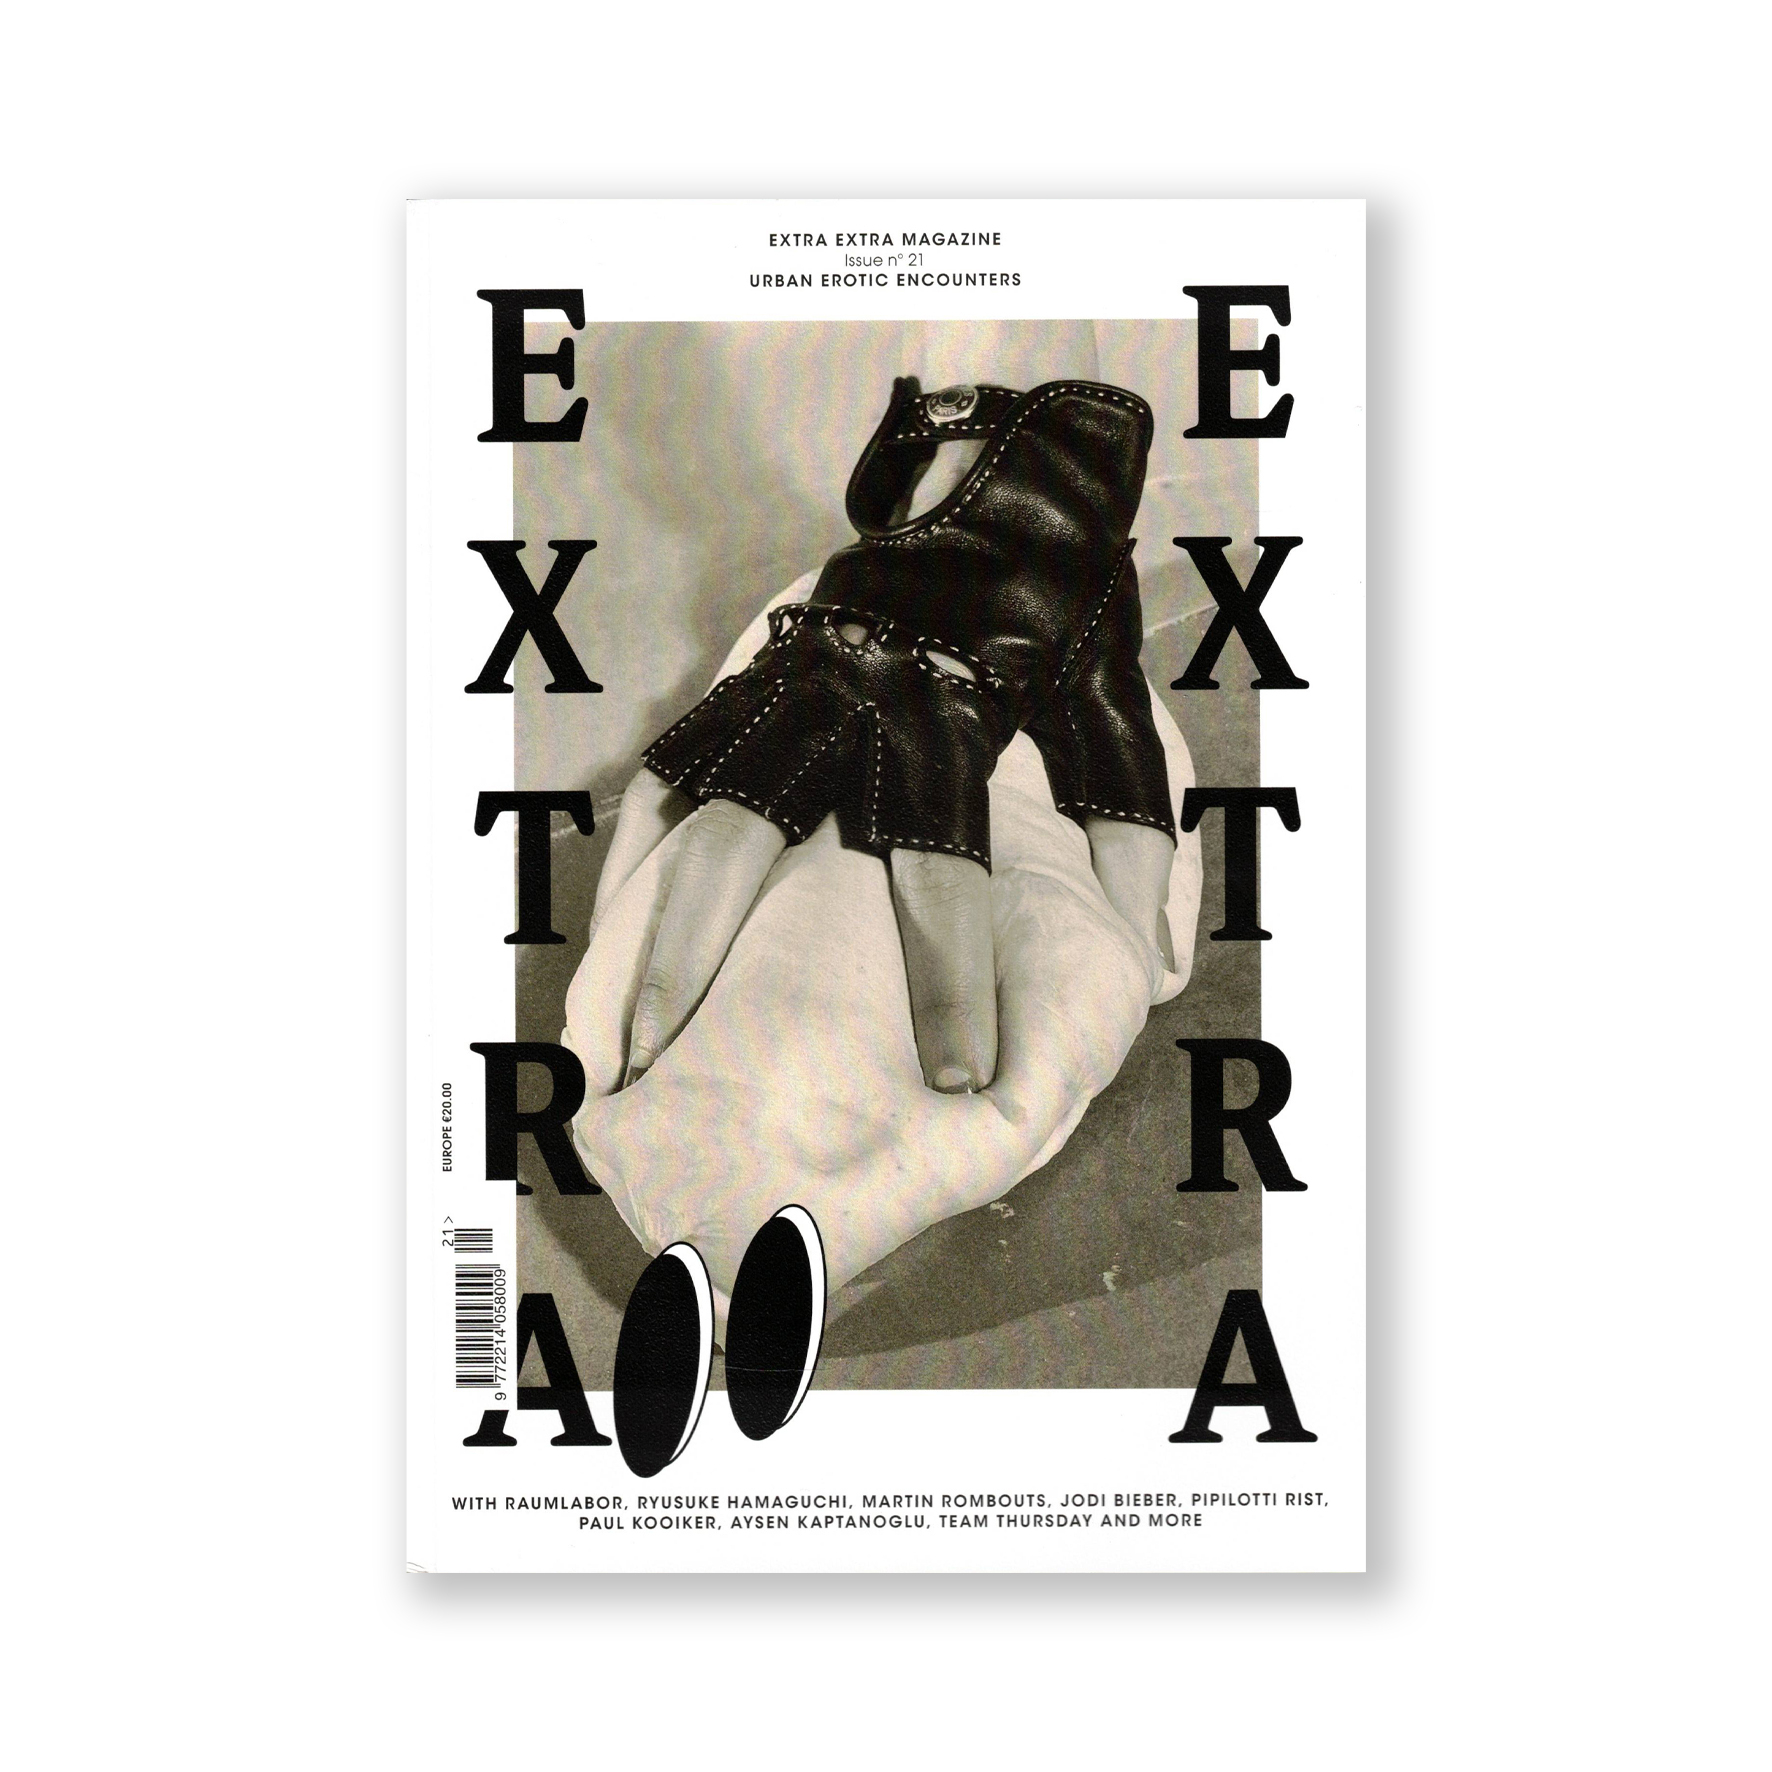 Extra Extra magazine no.21